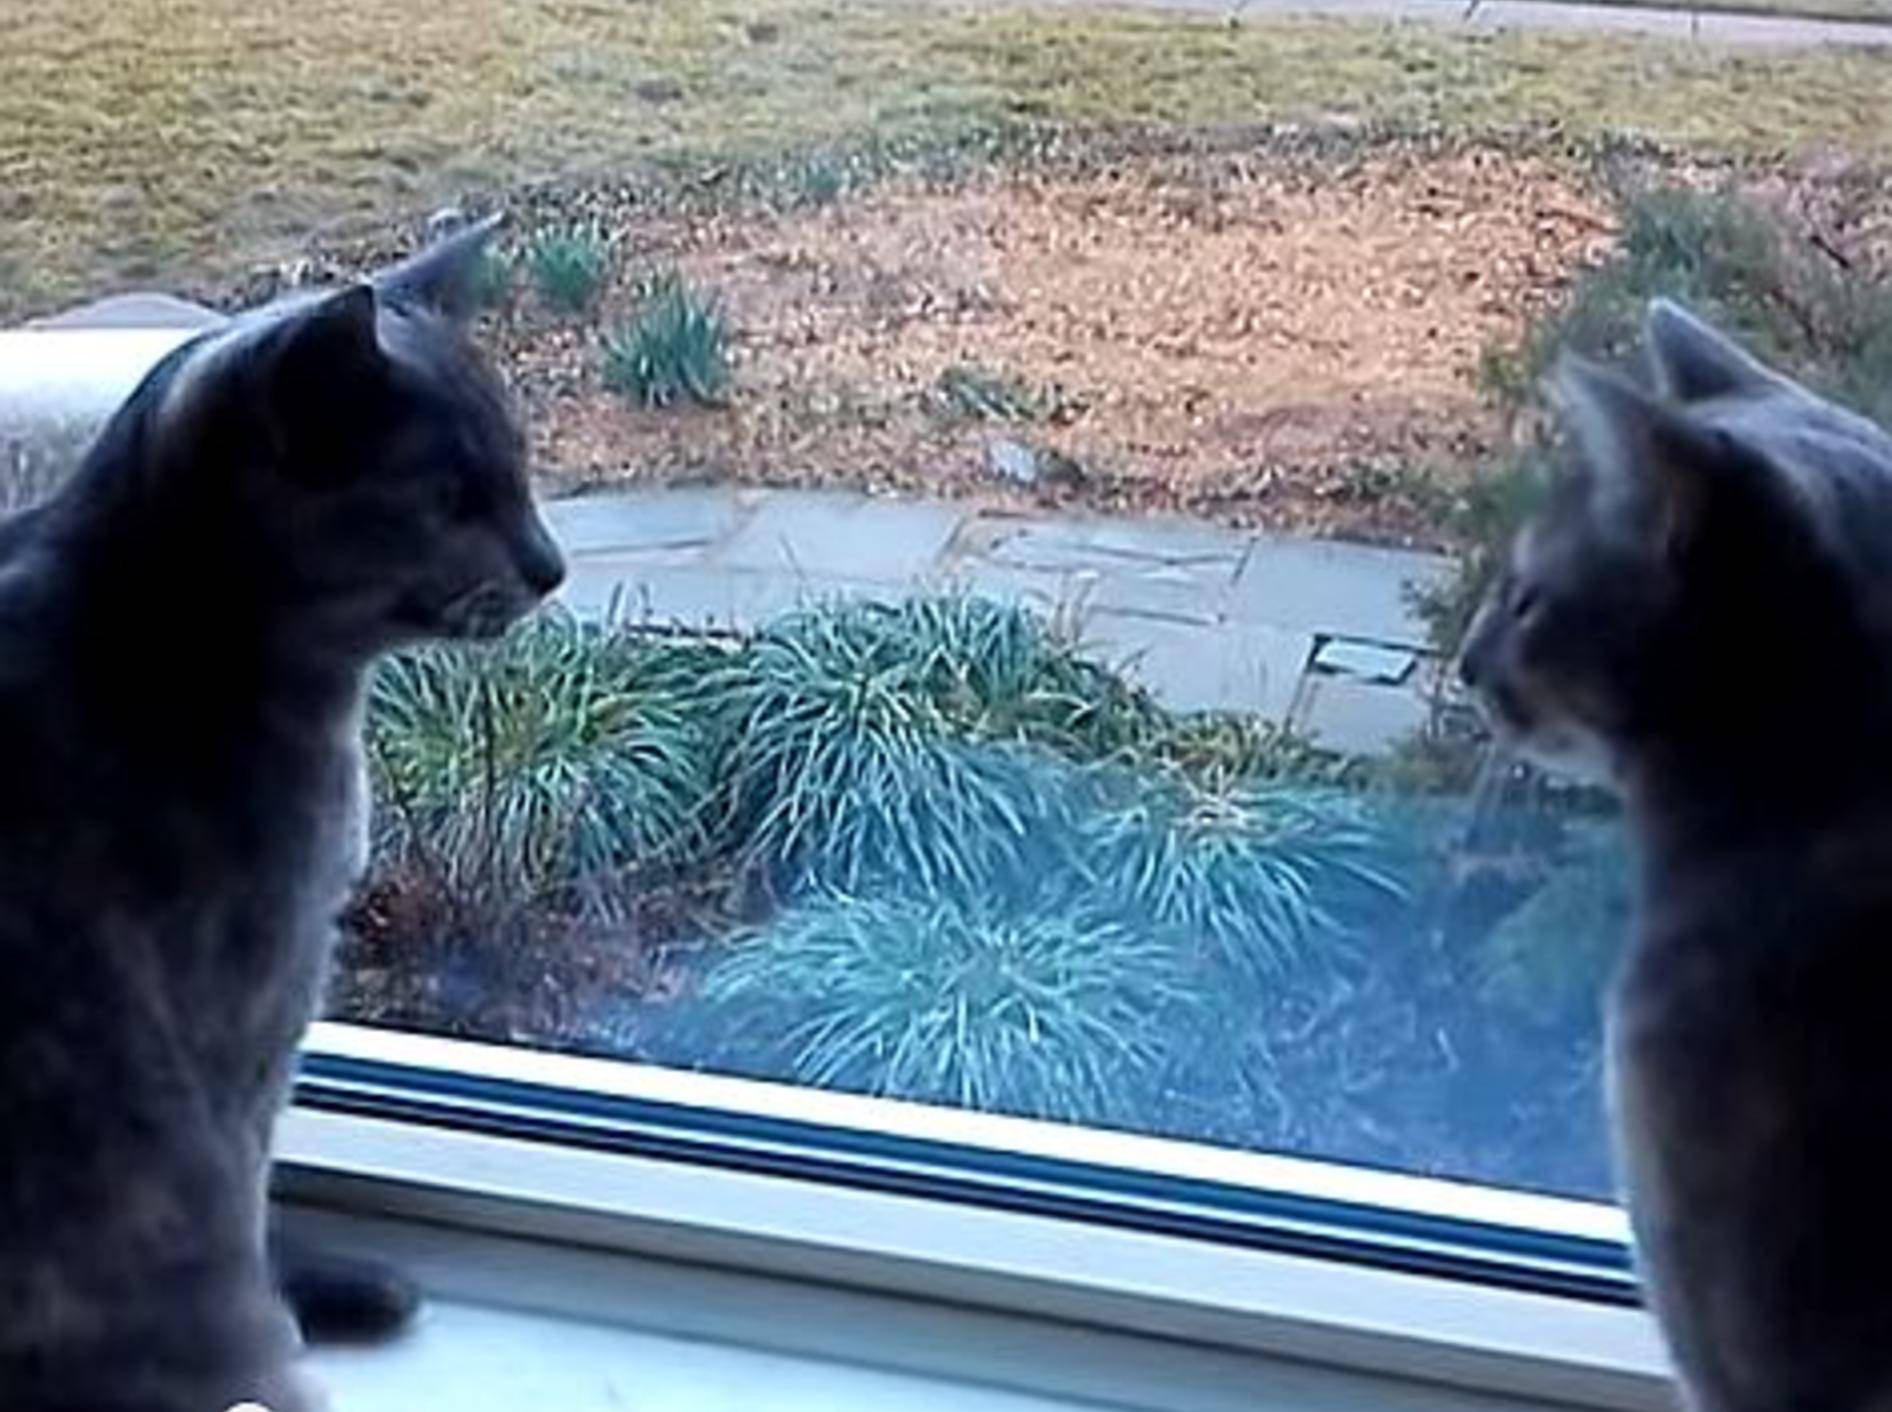 Worüber diese zwei Katzen sich wohl unterhalten? – Bild: Youtube / TeleporterDown